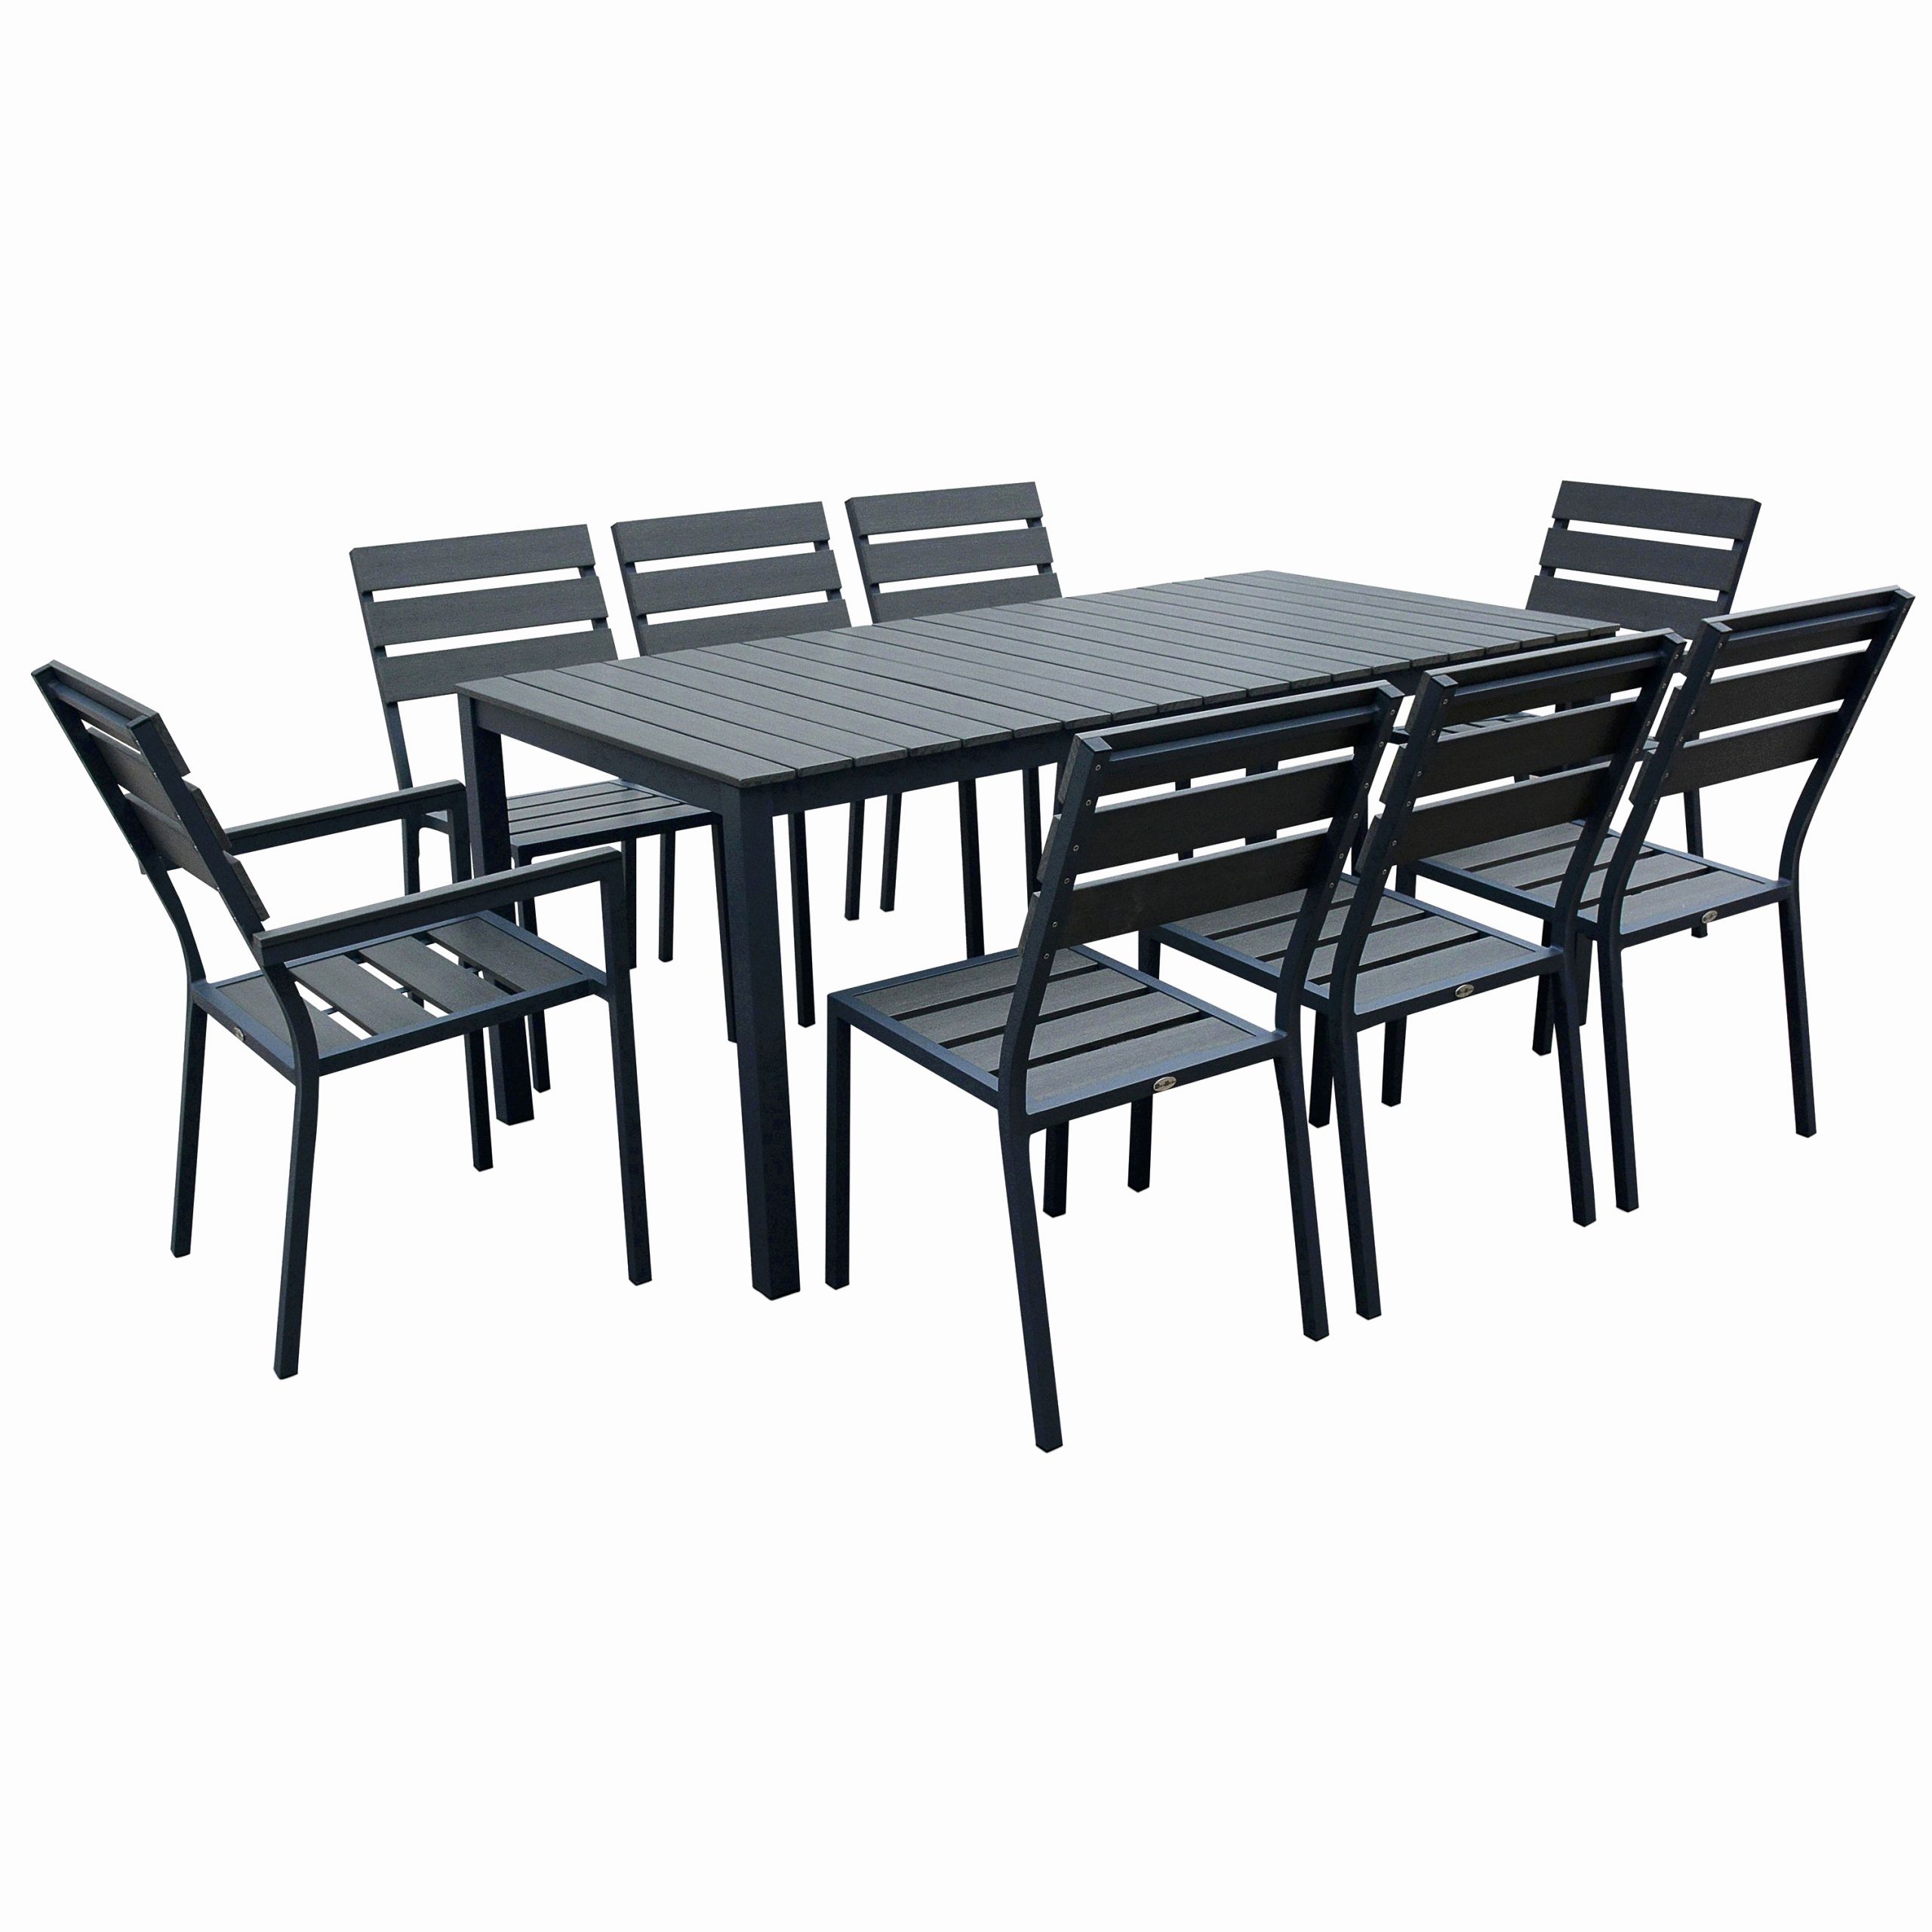 table et chaise industriel beau table jardin aluminium luxe chaise metal noir frais fauteuil chaise of table et chaise industriel